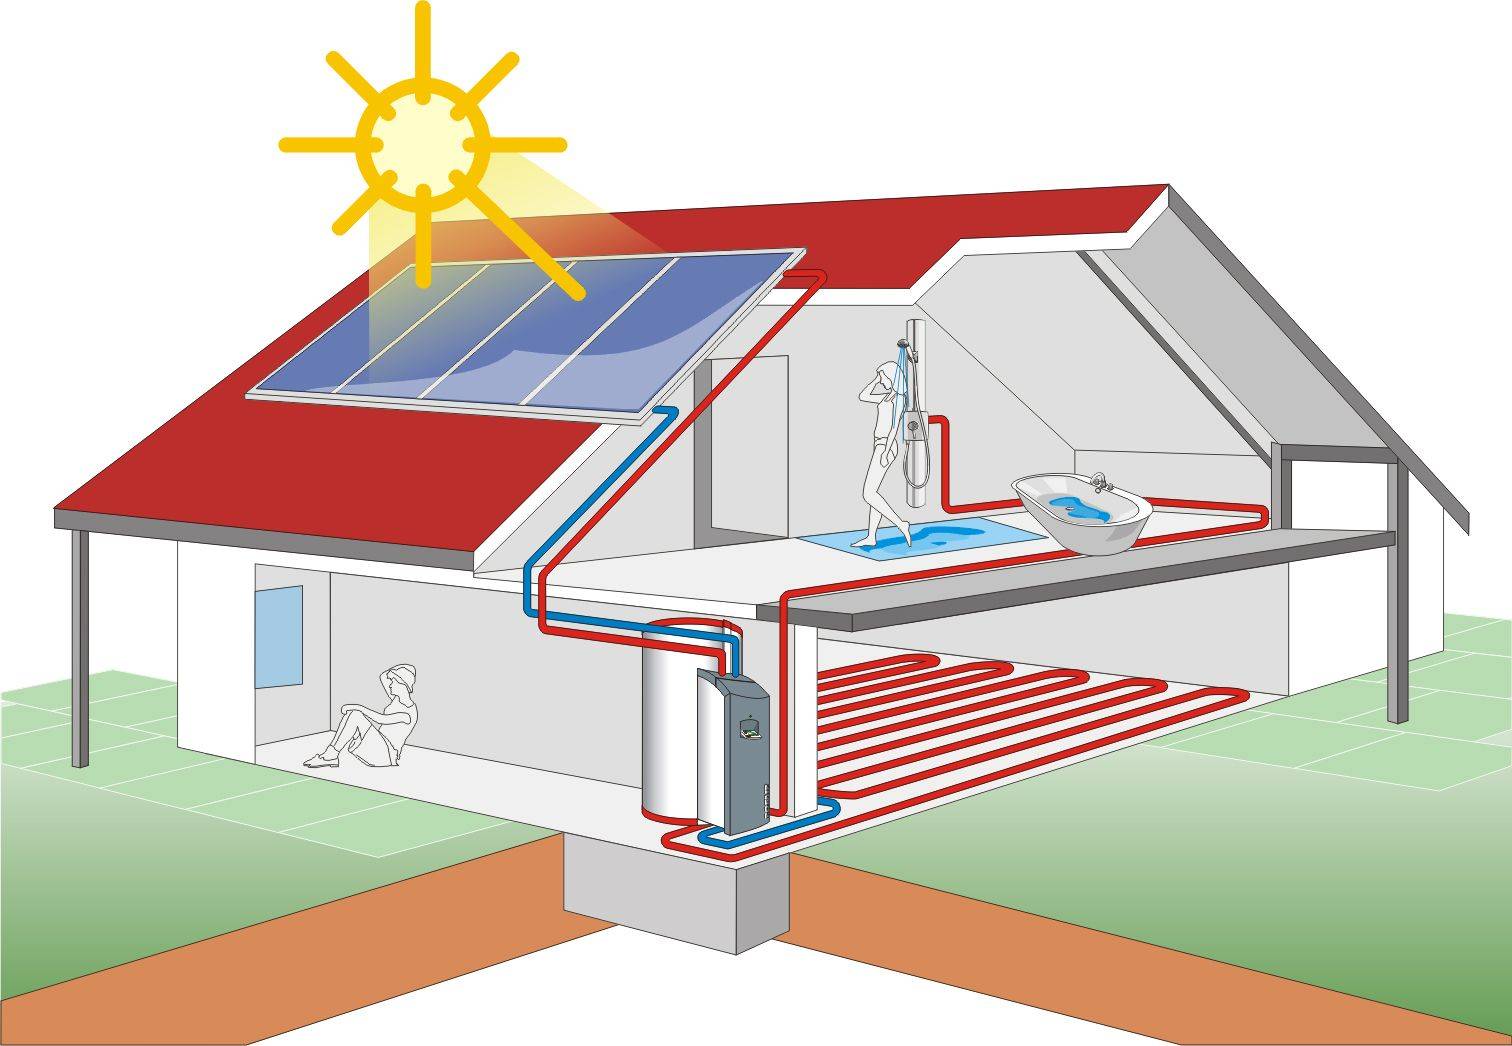 Альтернативное отопление частного дома без газа и электричества: источники обогрева